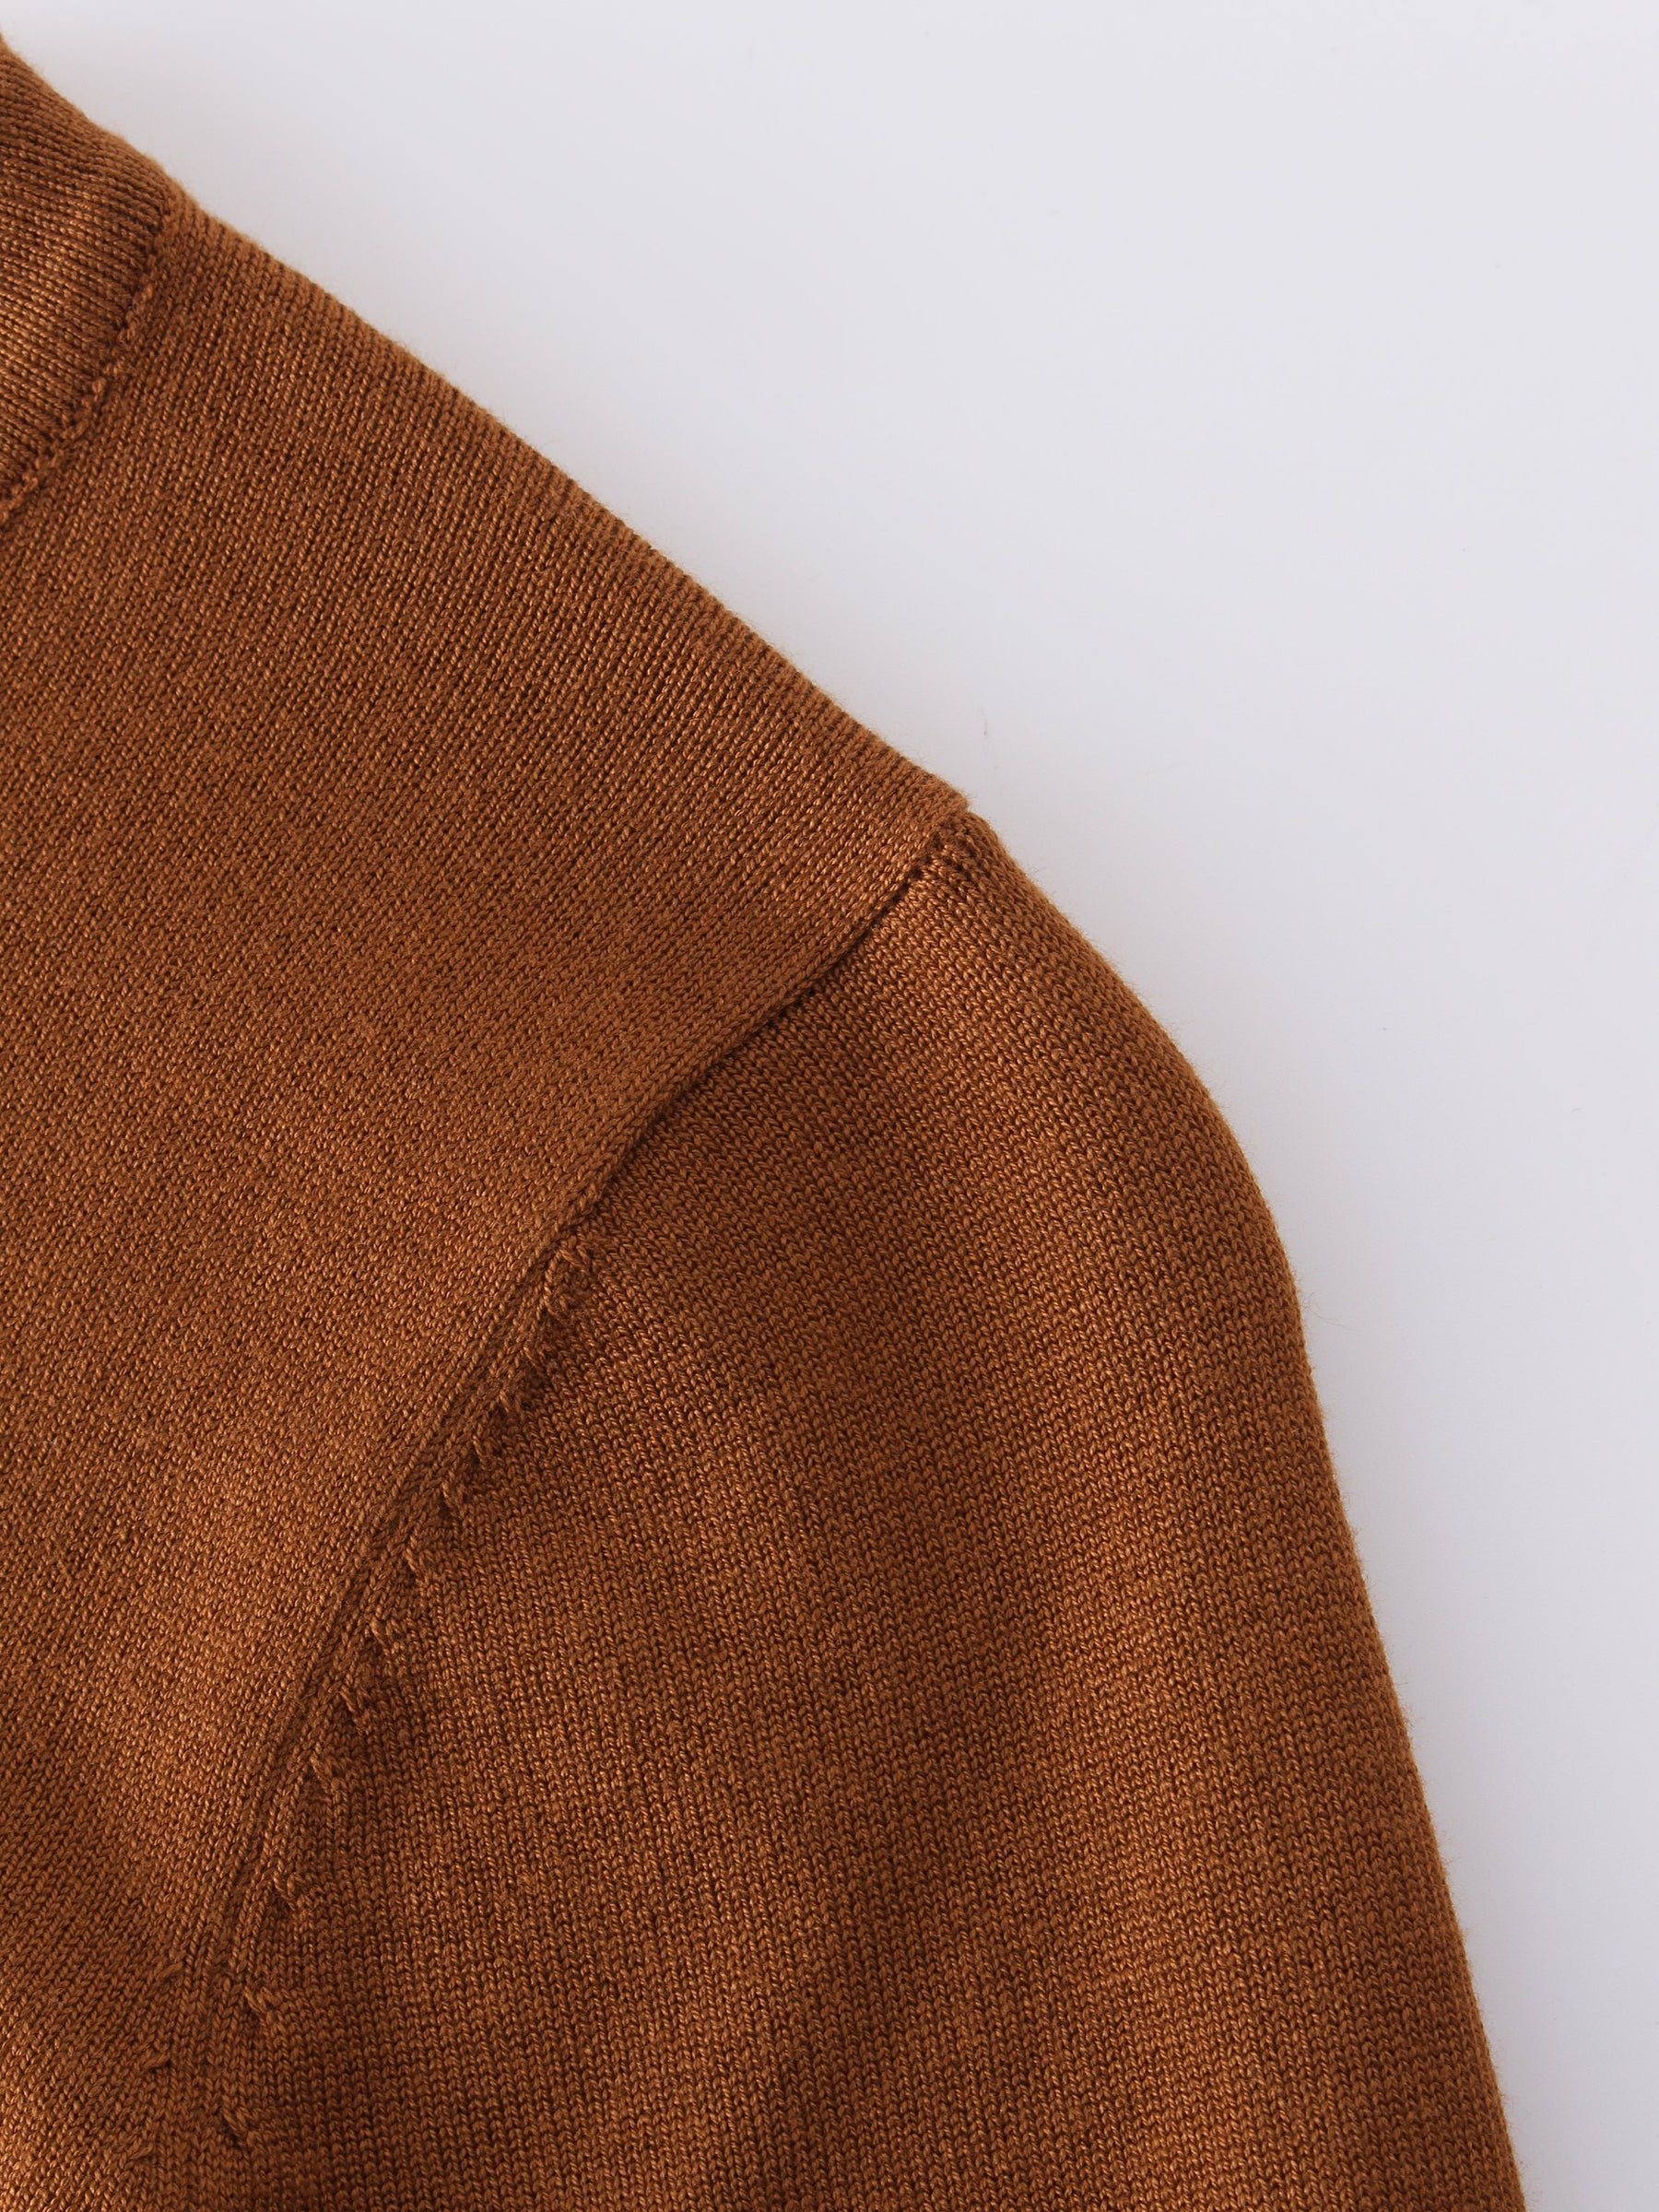 Jersey básico con cuello redondo 3Q-Marrón